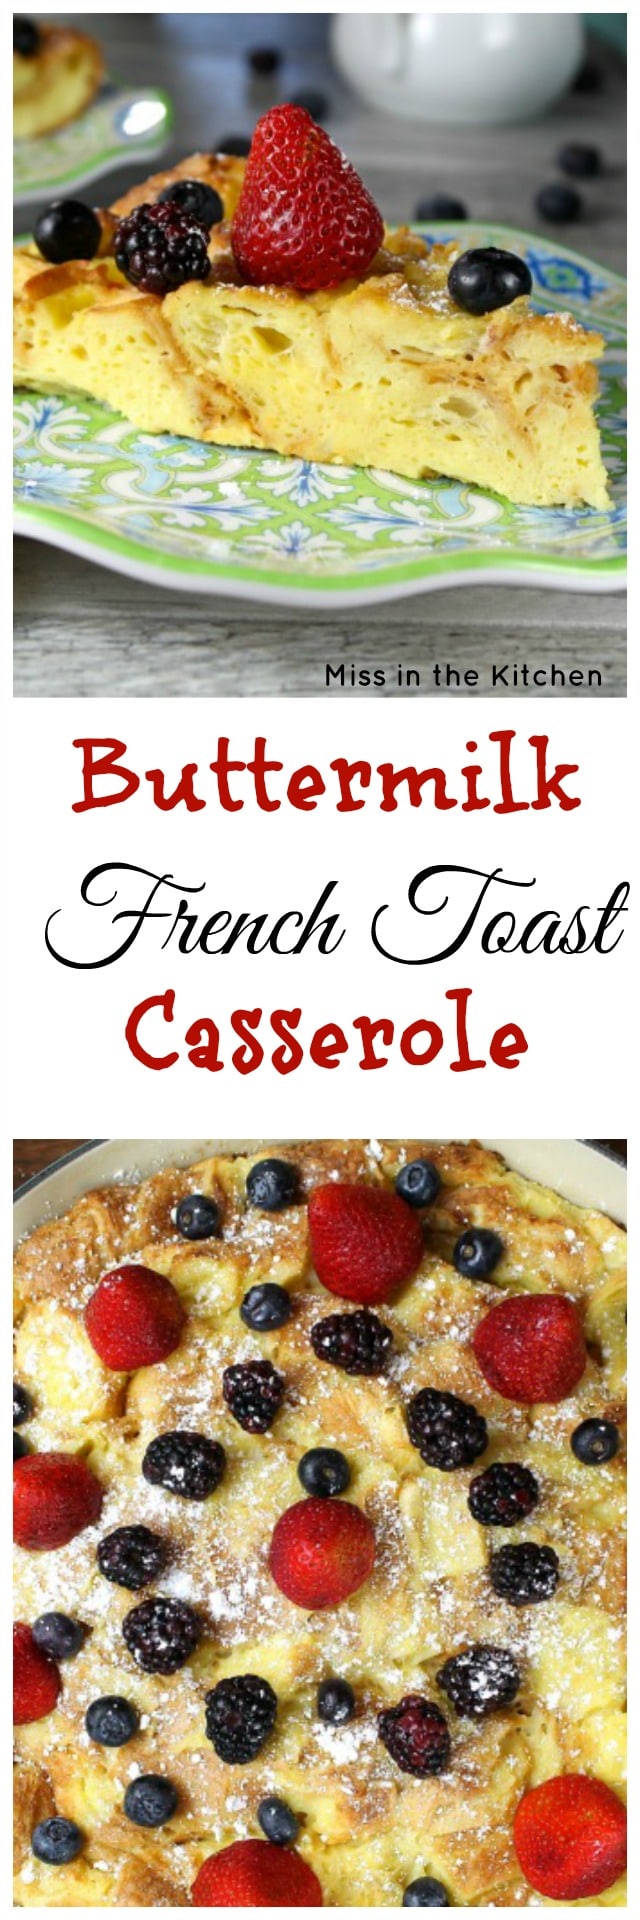 Buttermilk French Toast Casserole Recipe found at MissintheKitchen.com